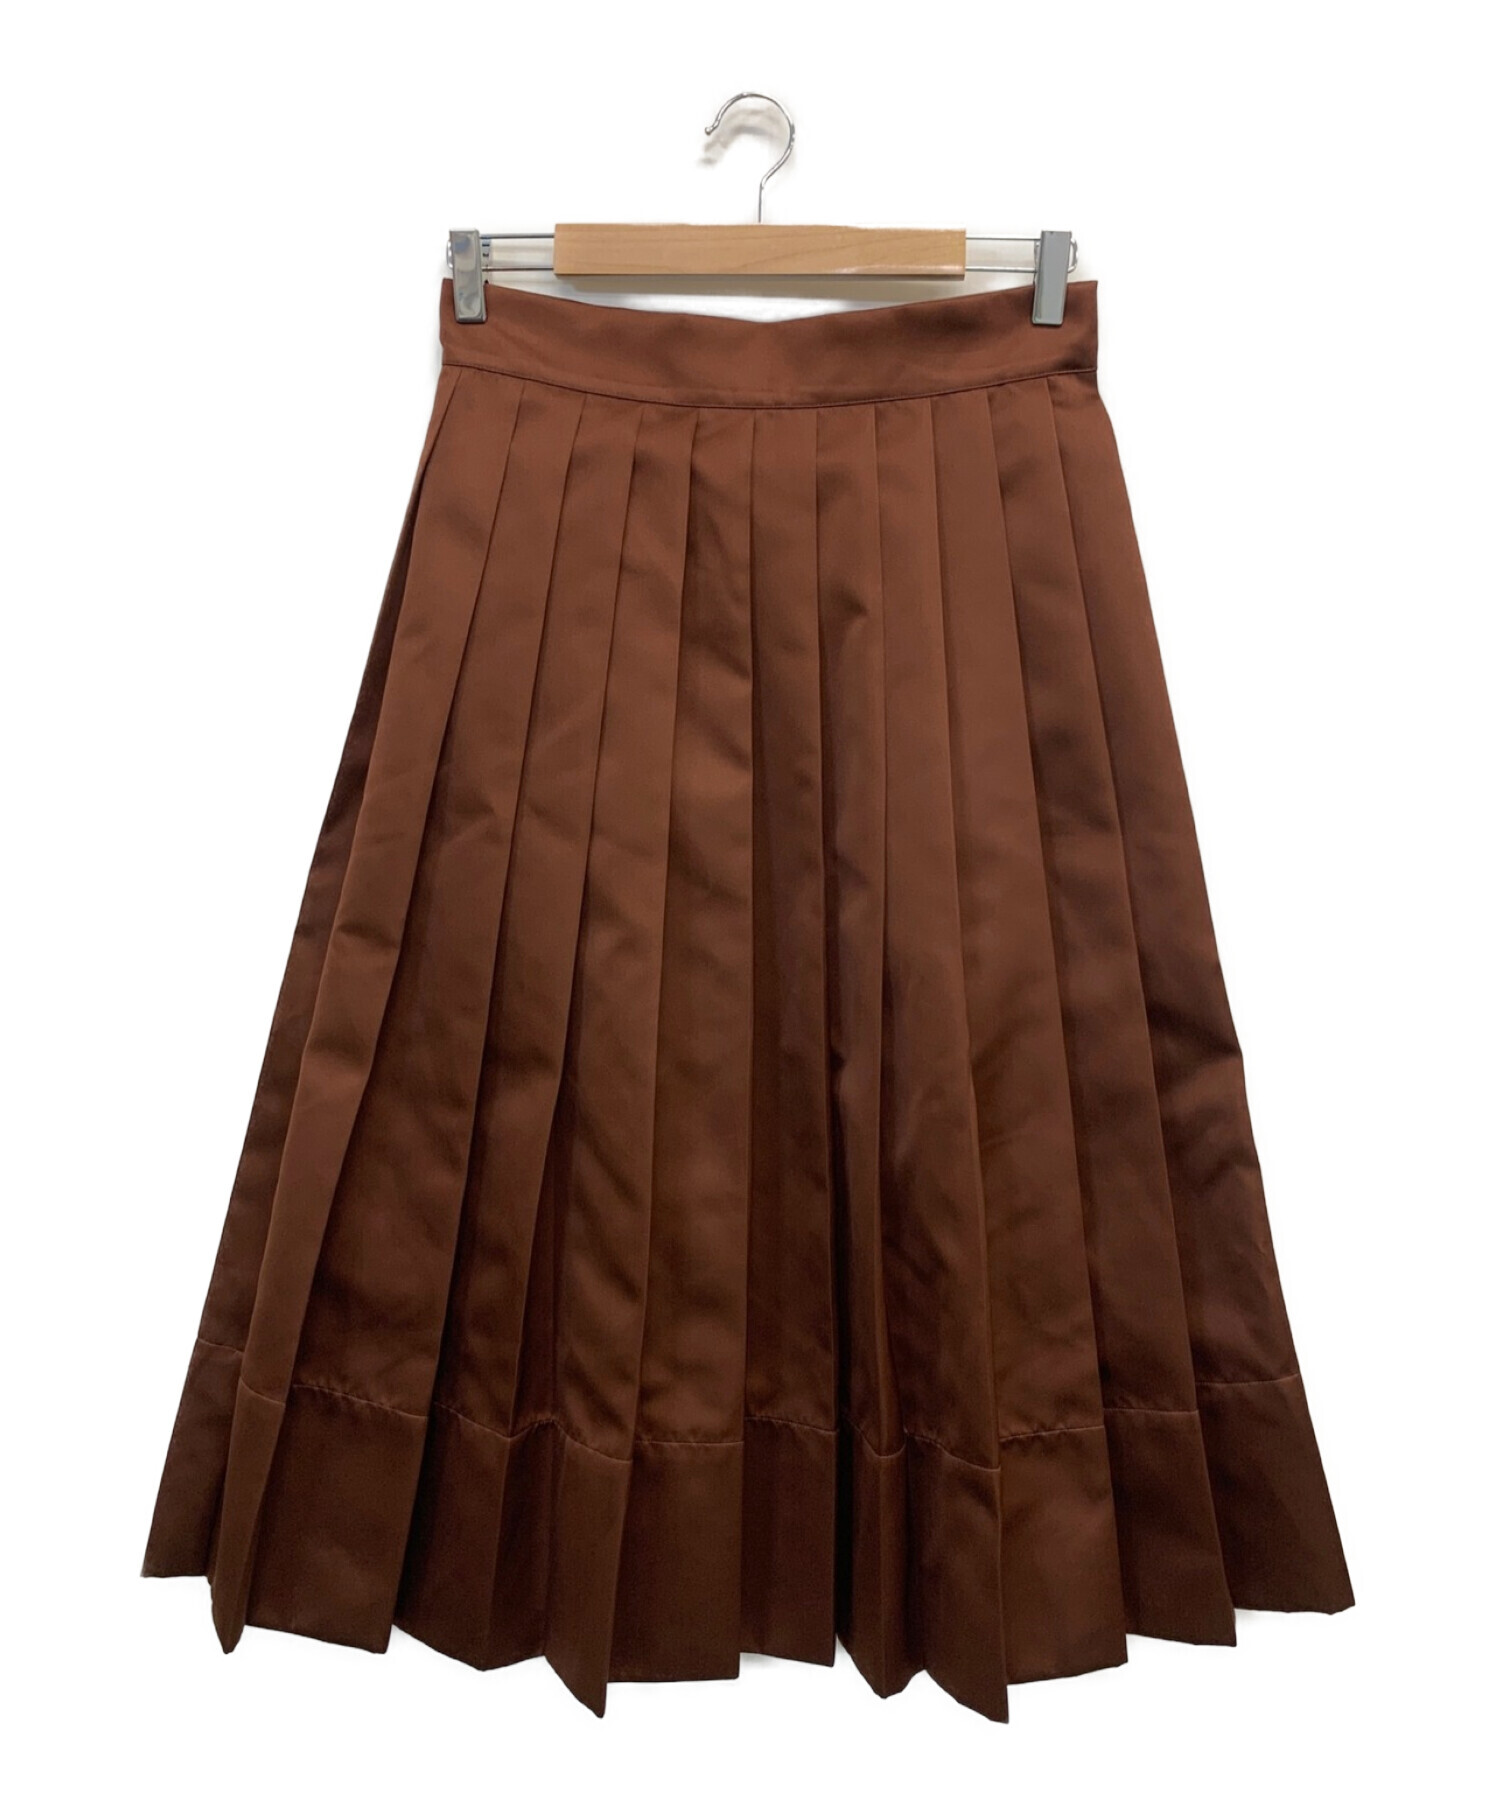 プランシー ロングスカート サイズ38 M -ロングスカート